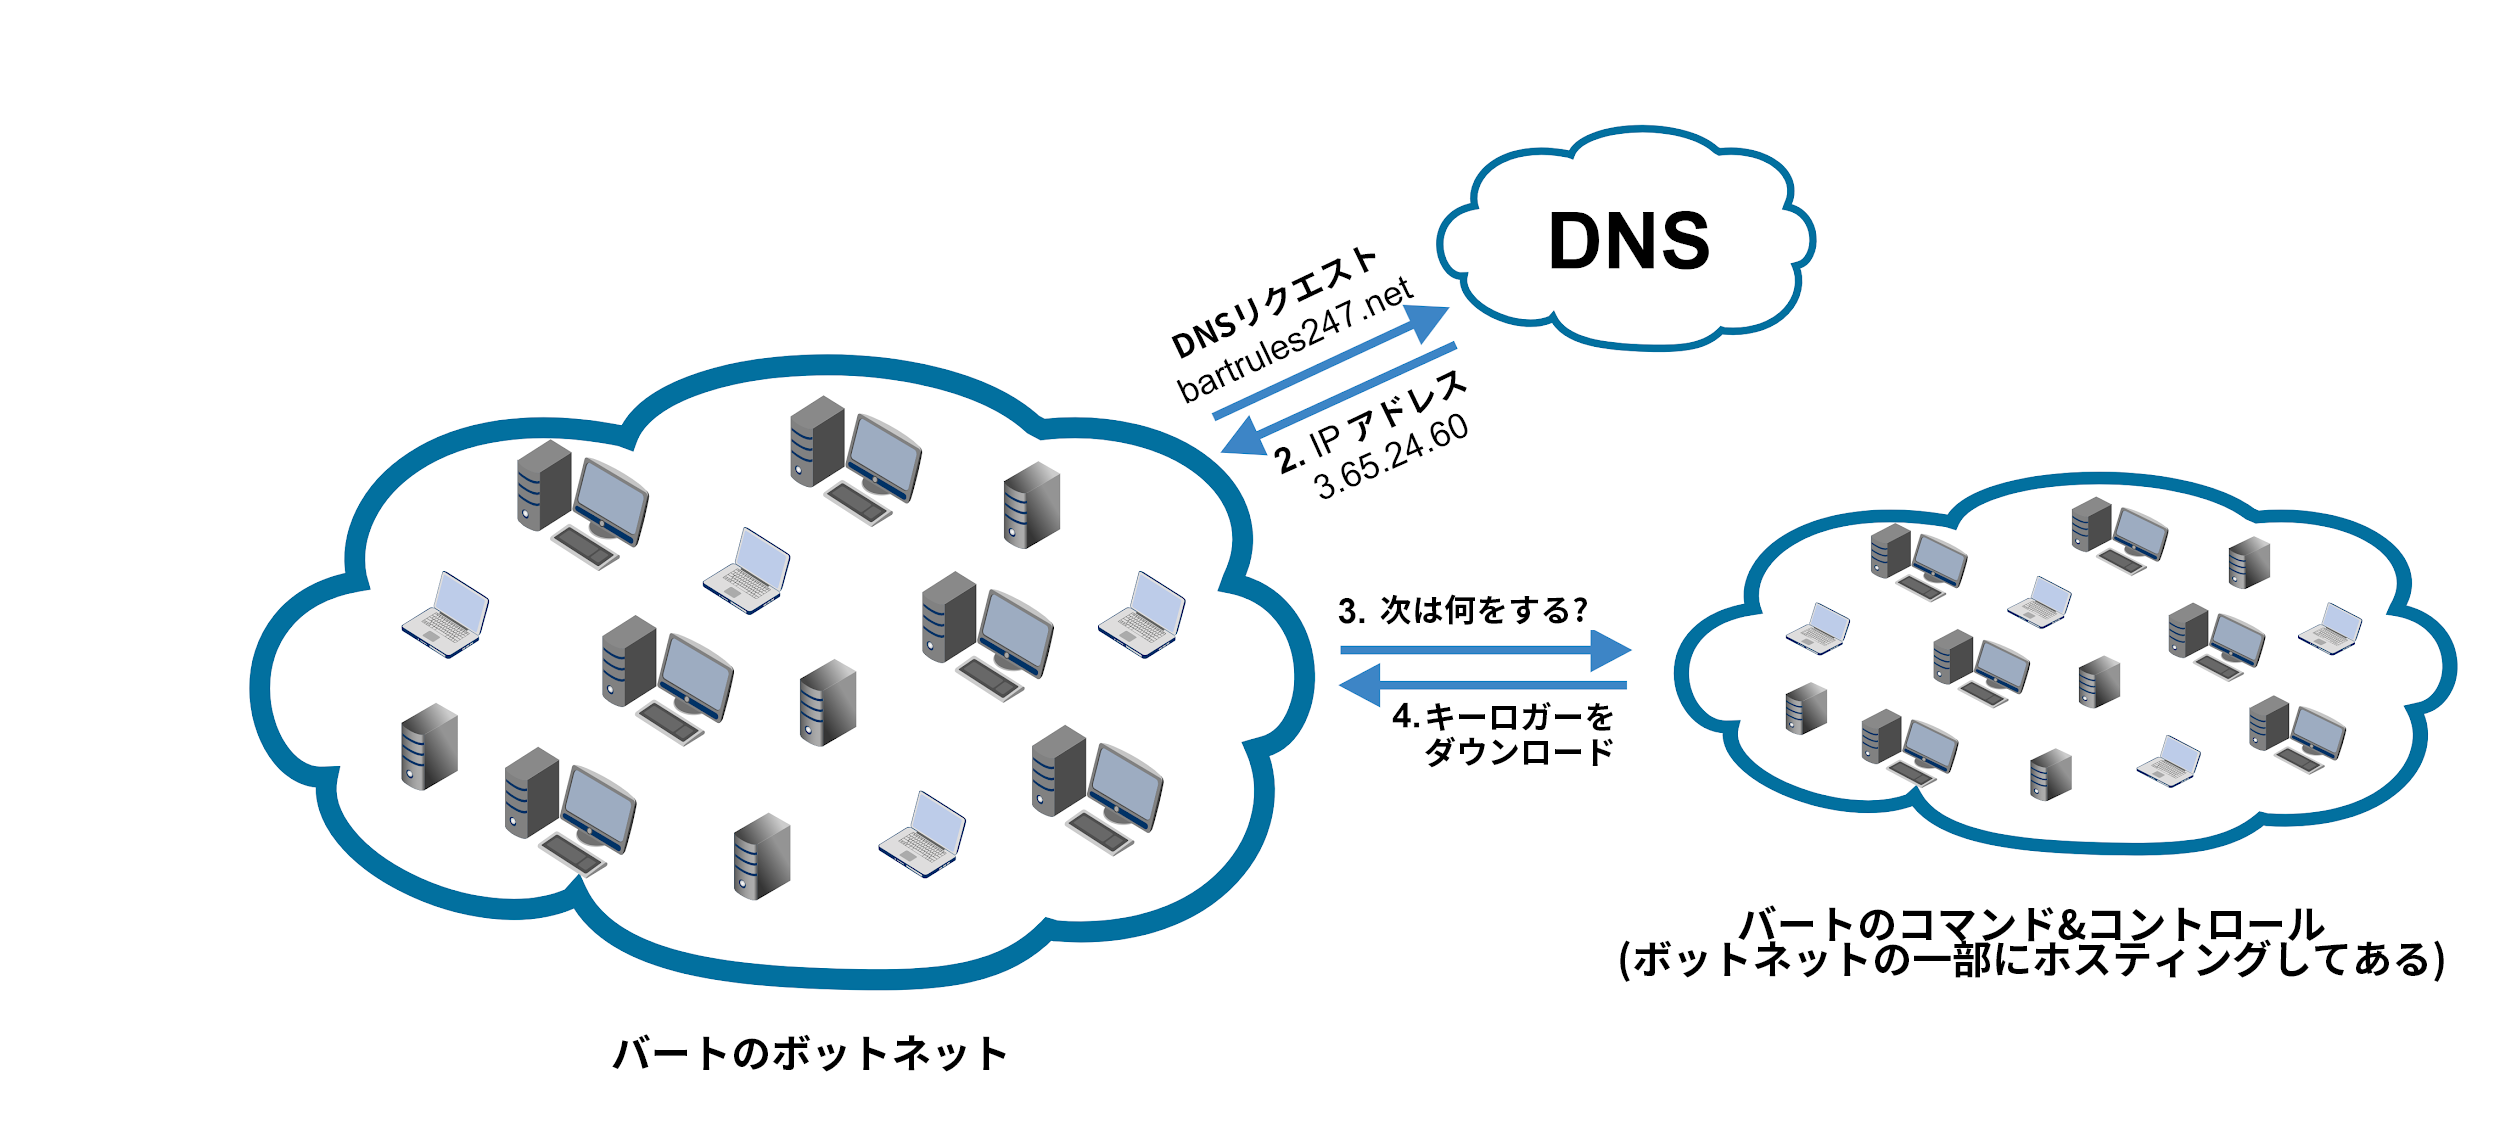 バートのボットネットインフラストラクチャ: 1）ボットネットからDNSへの攻撃者のC2に対するDNSリクエスト。 2）DNSからIPアドレスを含むボットネットへのレスポンス。 3）ボットネットからC2への指示のリクエスト。 4）キーロガー命令をC2からボットネットにダウンロード